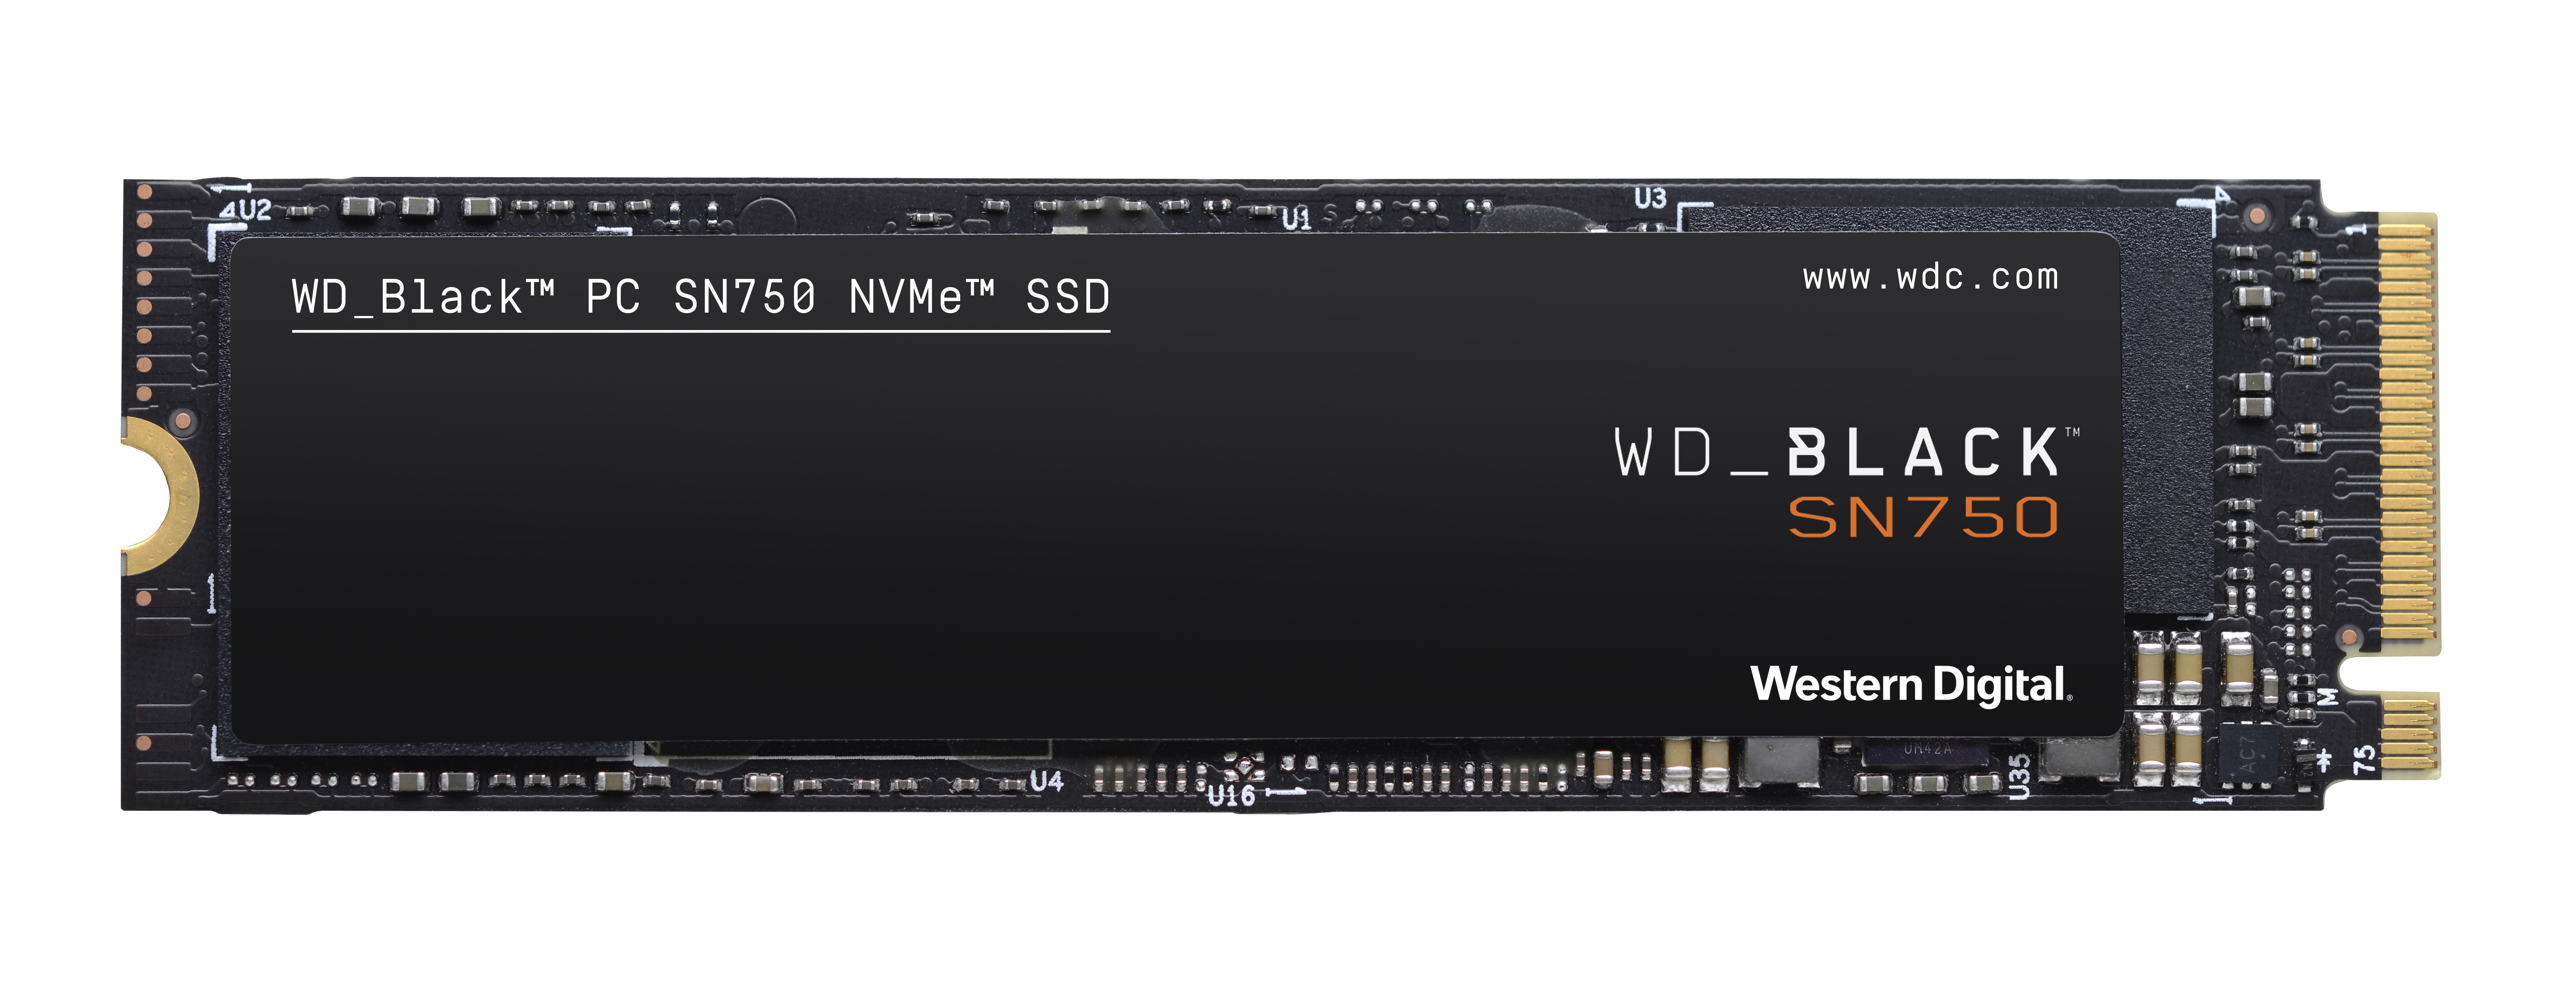 WD_BLACK SN750 NVMe™ Speicher, 250 M.2, intern SSD, Interner Speicher GB